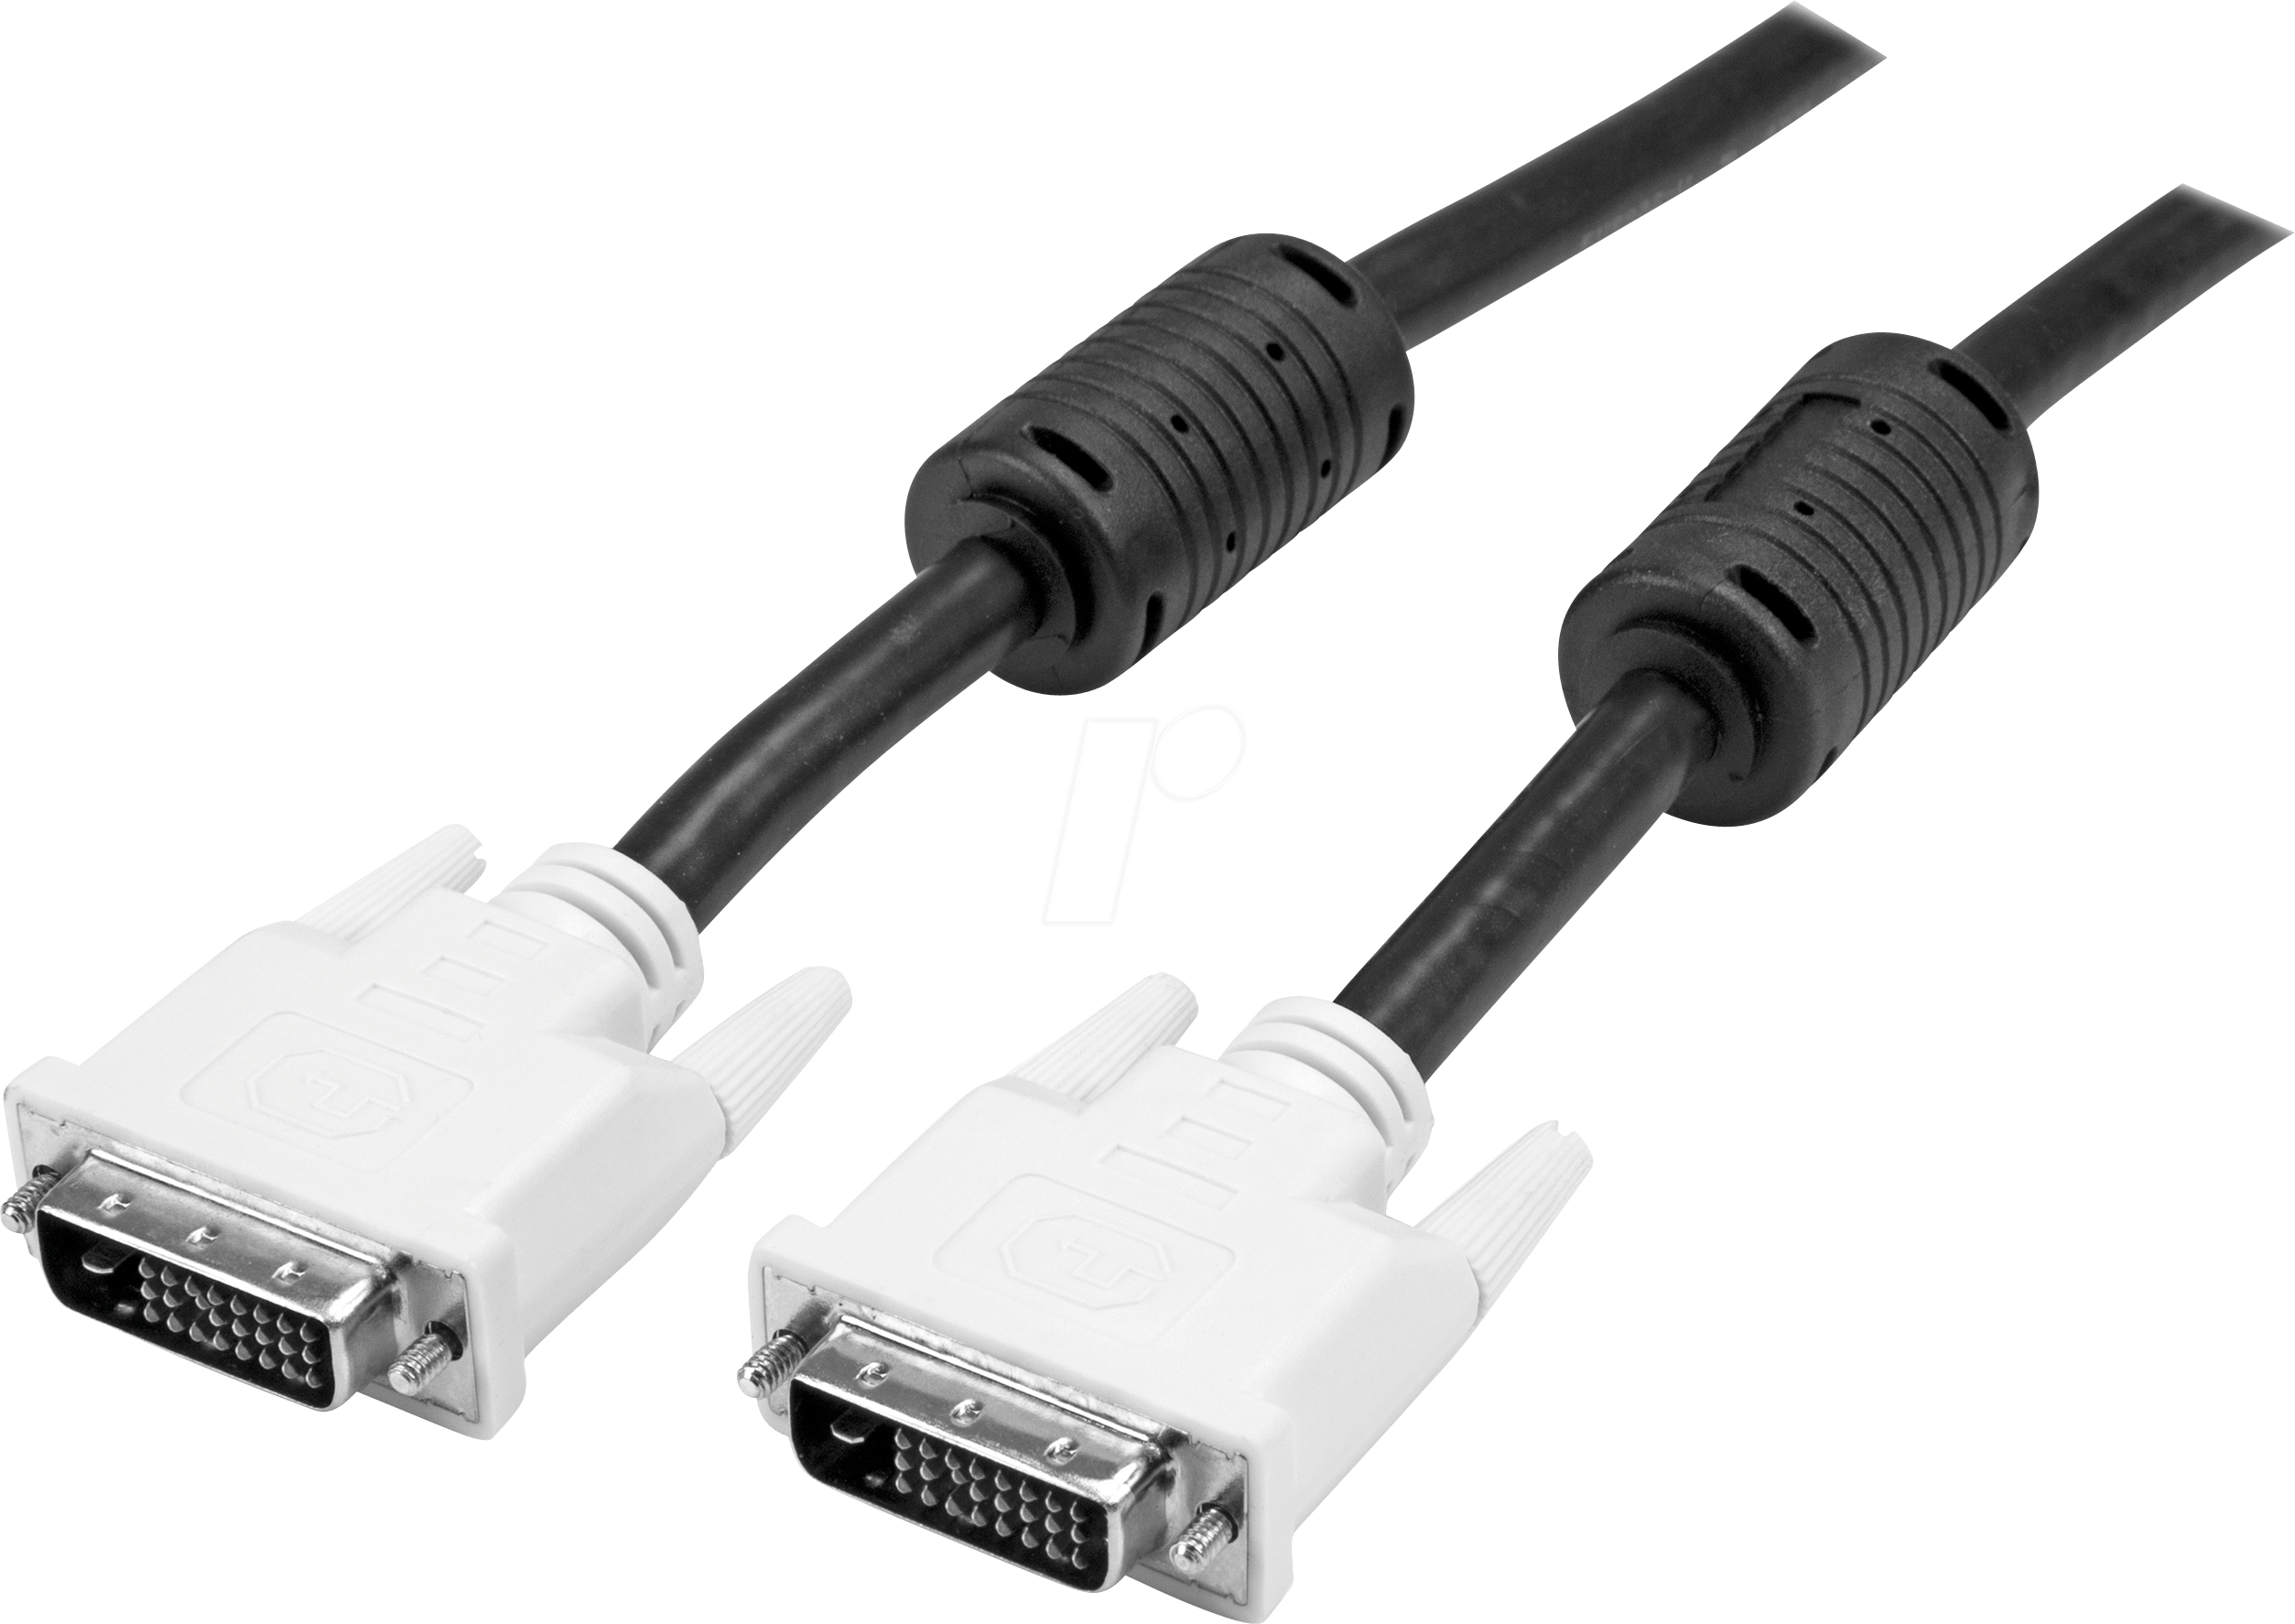 HD-Video-Kabel Stecker männlich-männlich DVI-D auf DVI-D 24 1 Kabel DE 